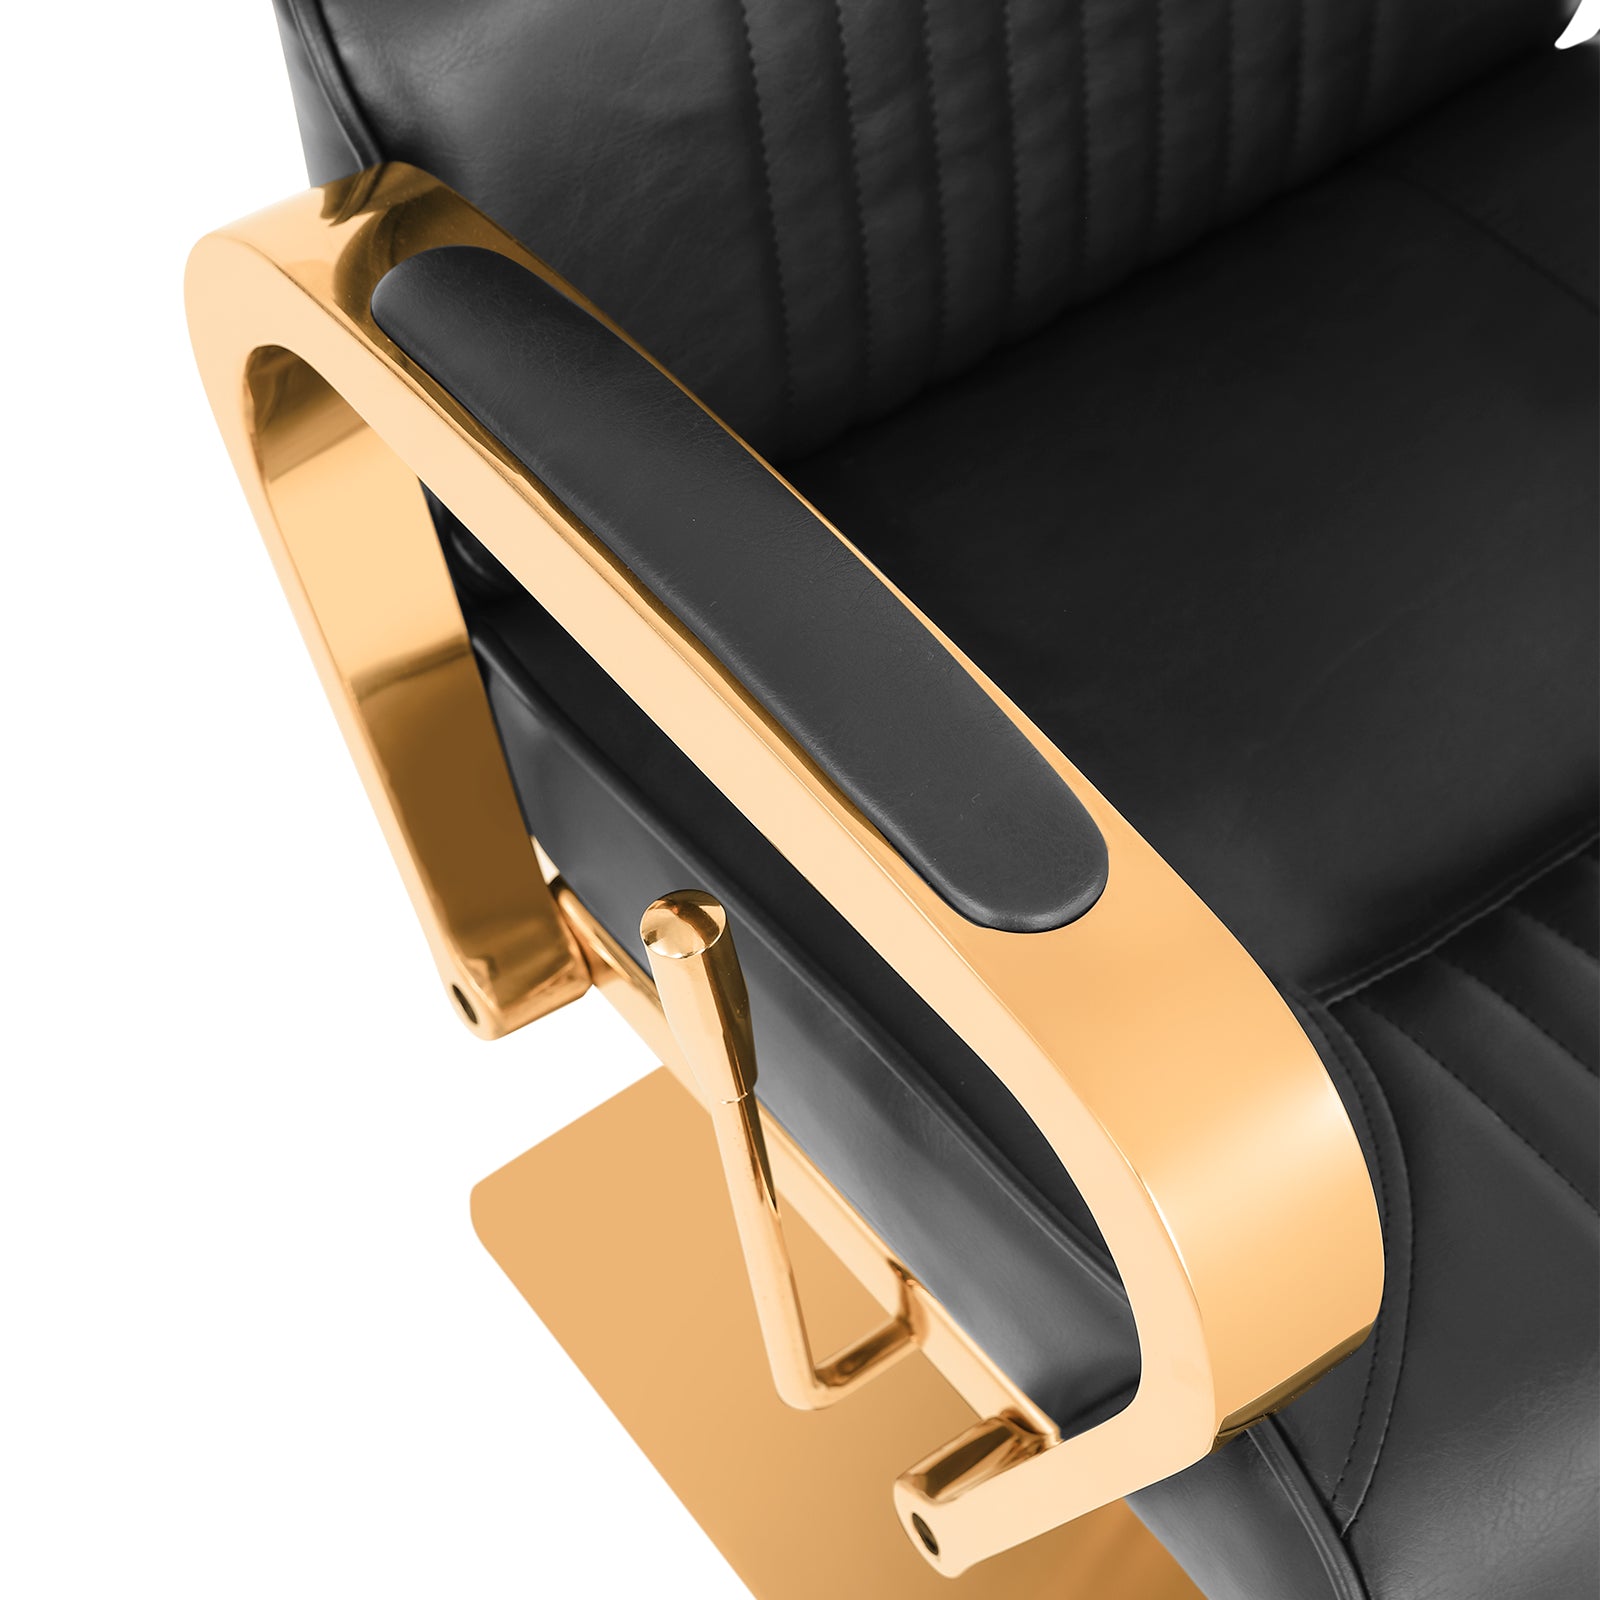 #5047  Prestige Gold All Purpose Barber Chair